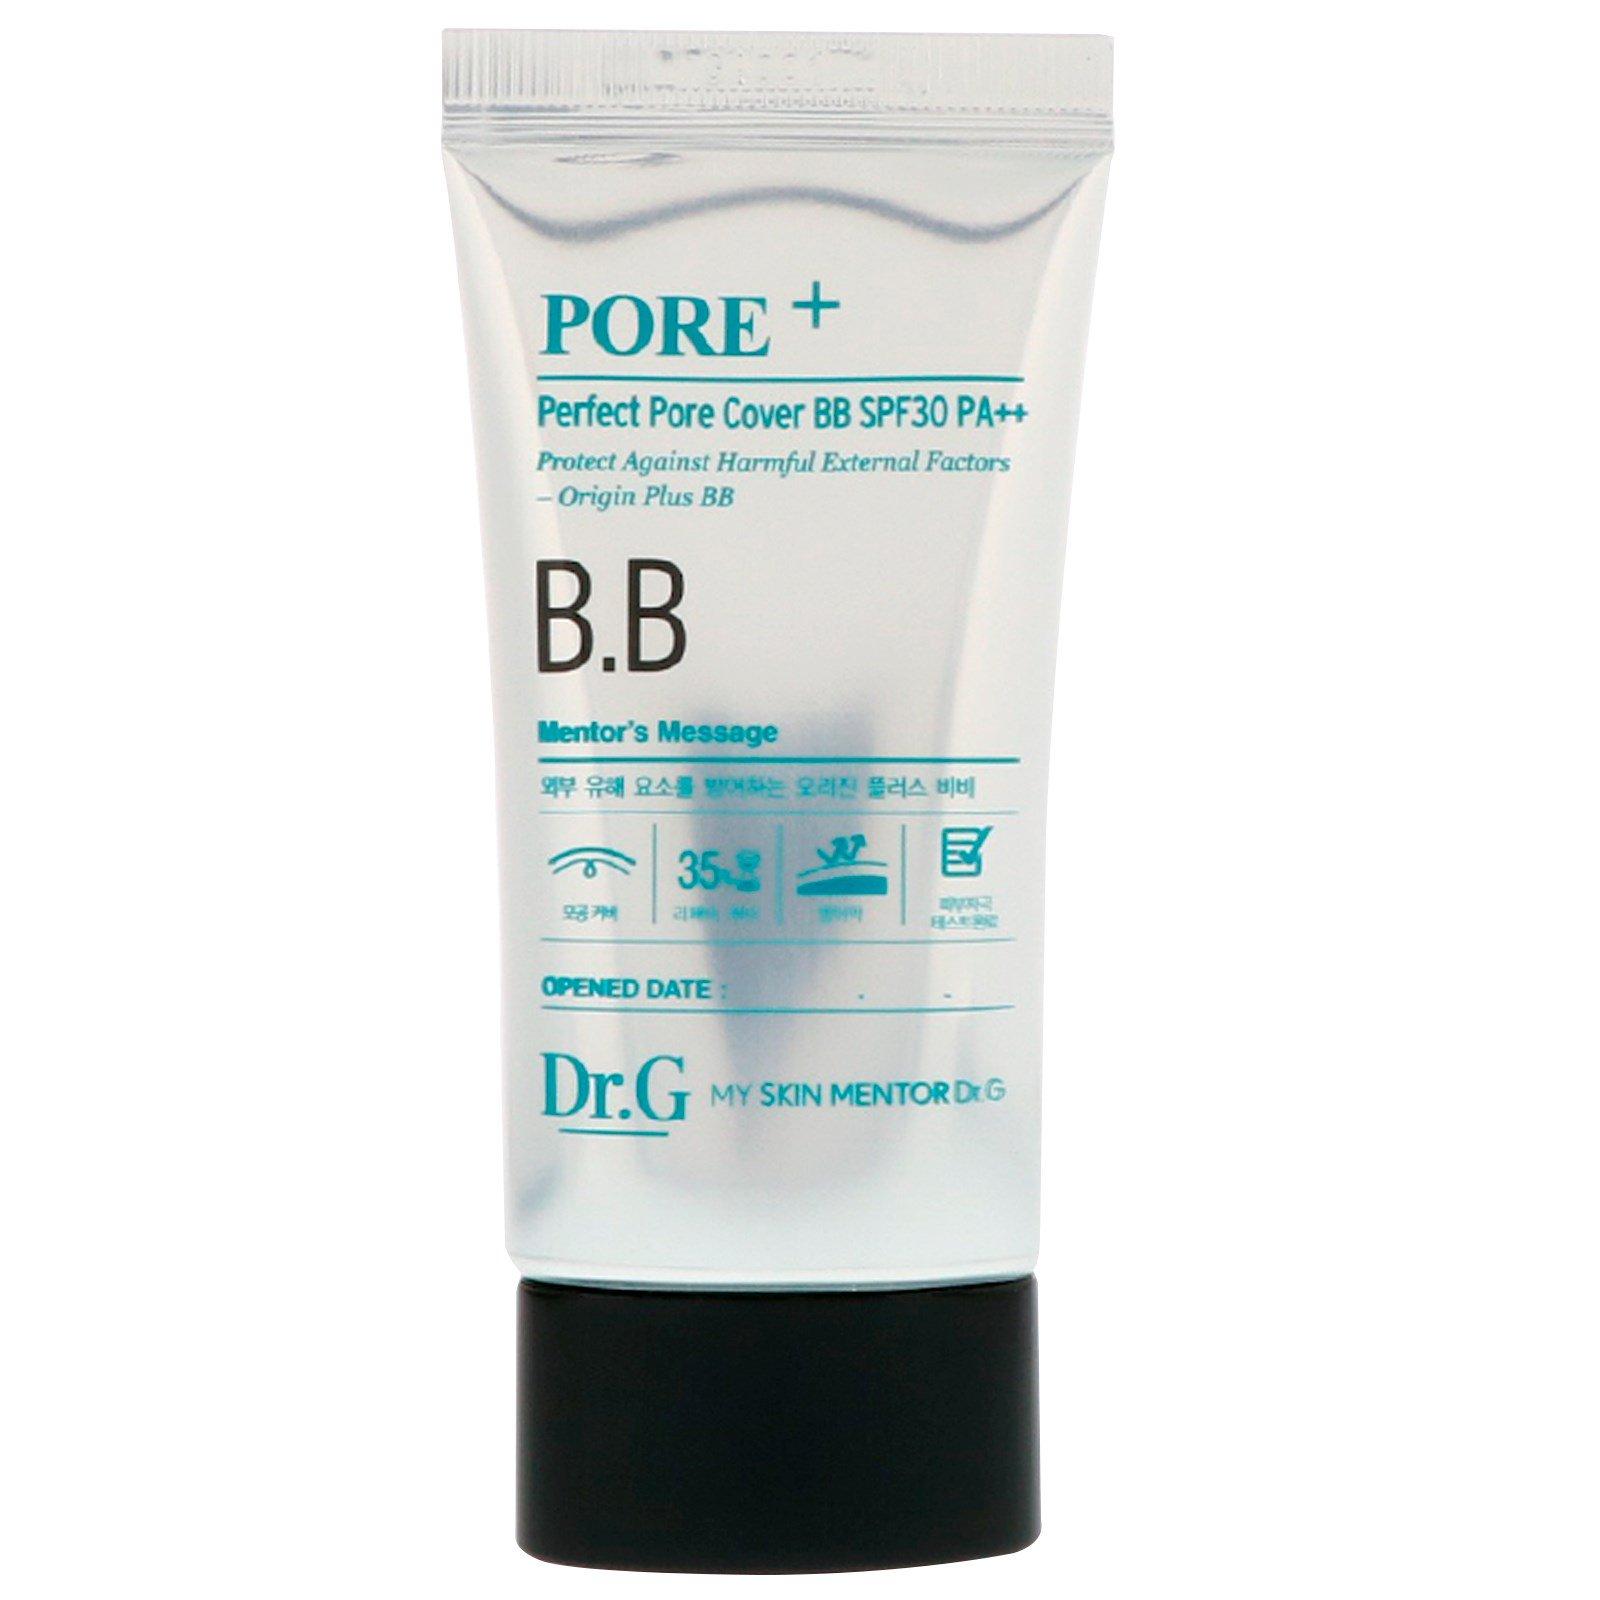 Pore+ Perfect Pore Cover BB SPF30 PA++